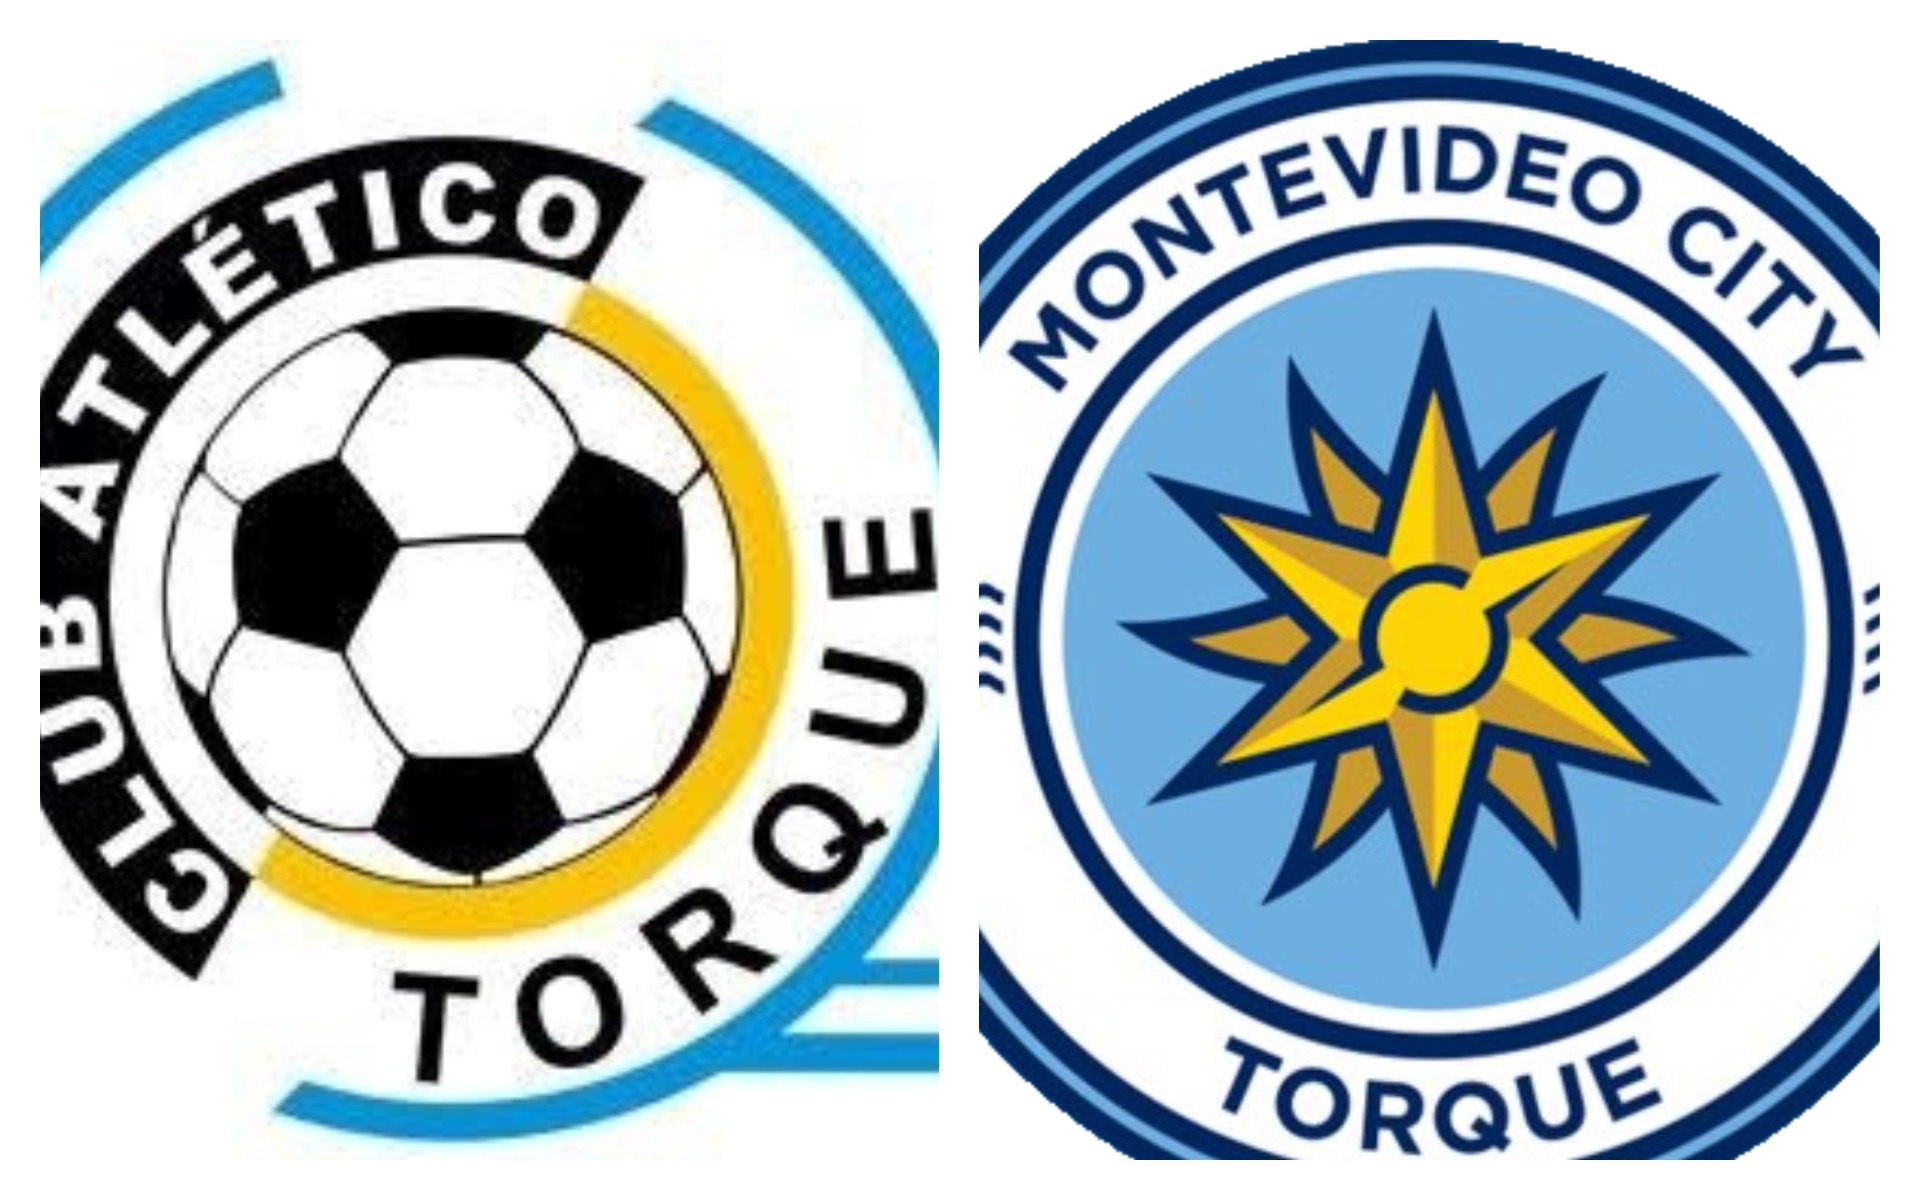 Filial do Manchester City na América do Sul, clube uruguaio muda de nome e  escudo, futebol internacional